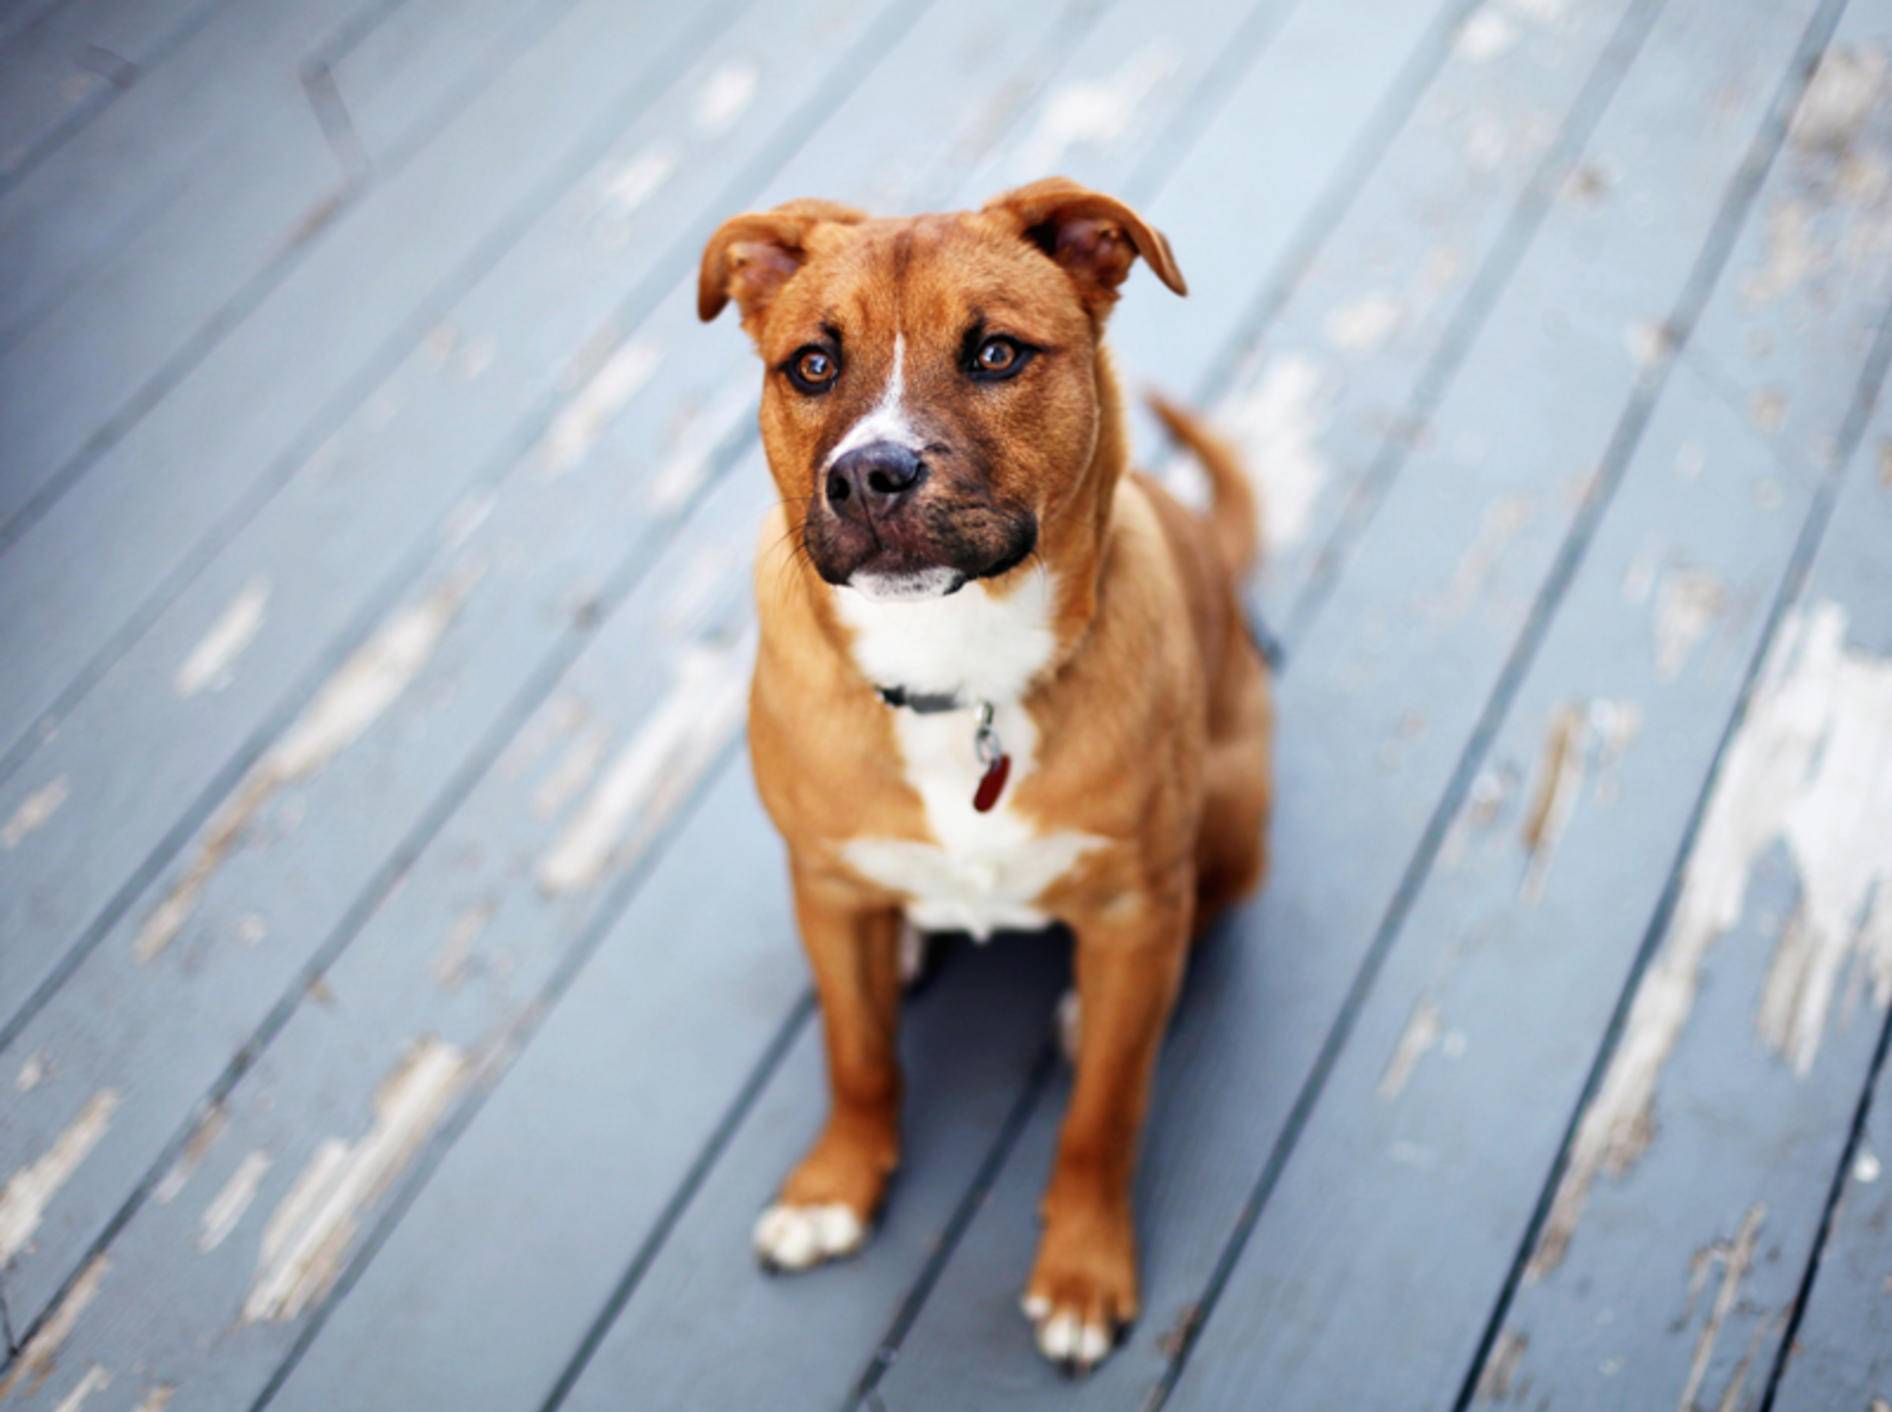 Dieser brave Hund scheint ein Profi in Sachen Impulskontrolle zu sein – Shutterstock / N K